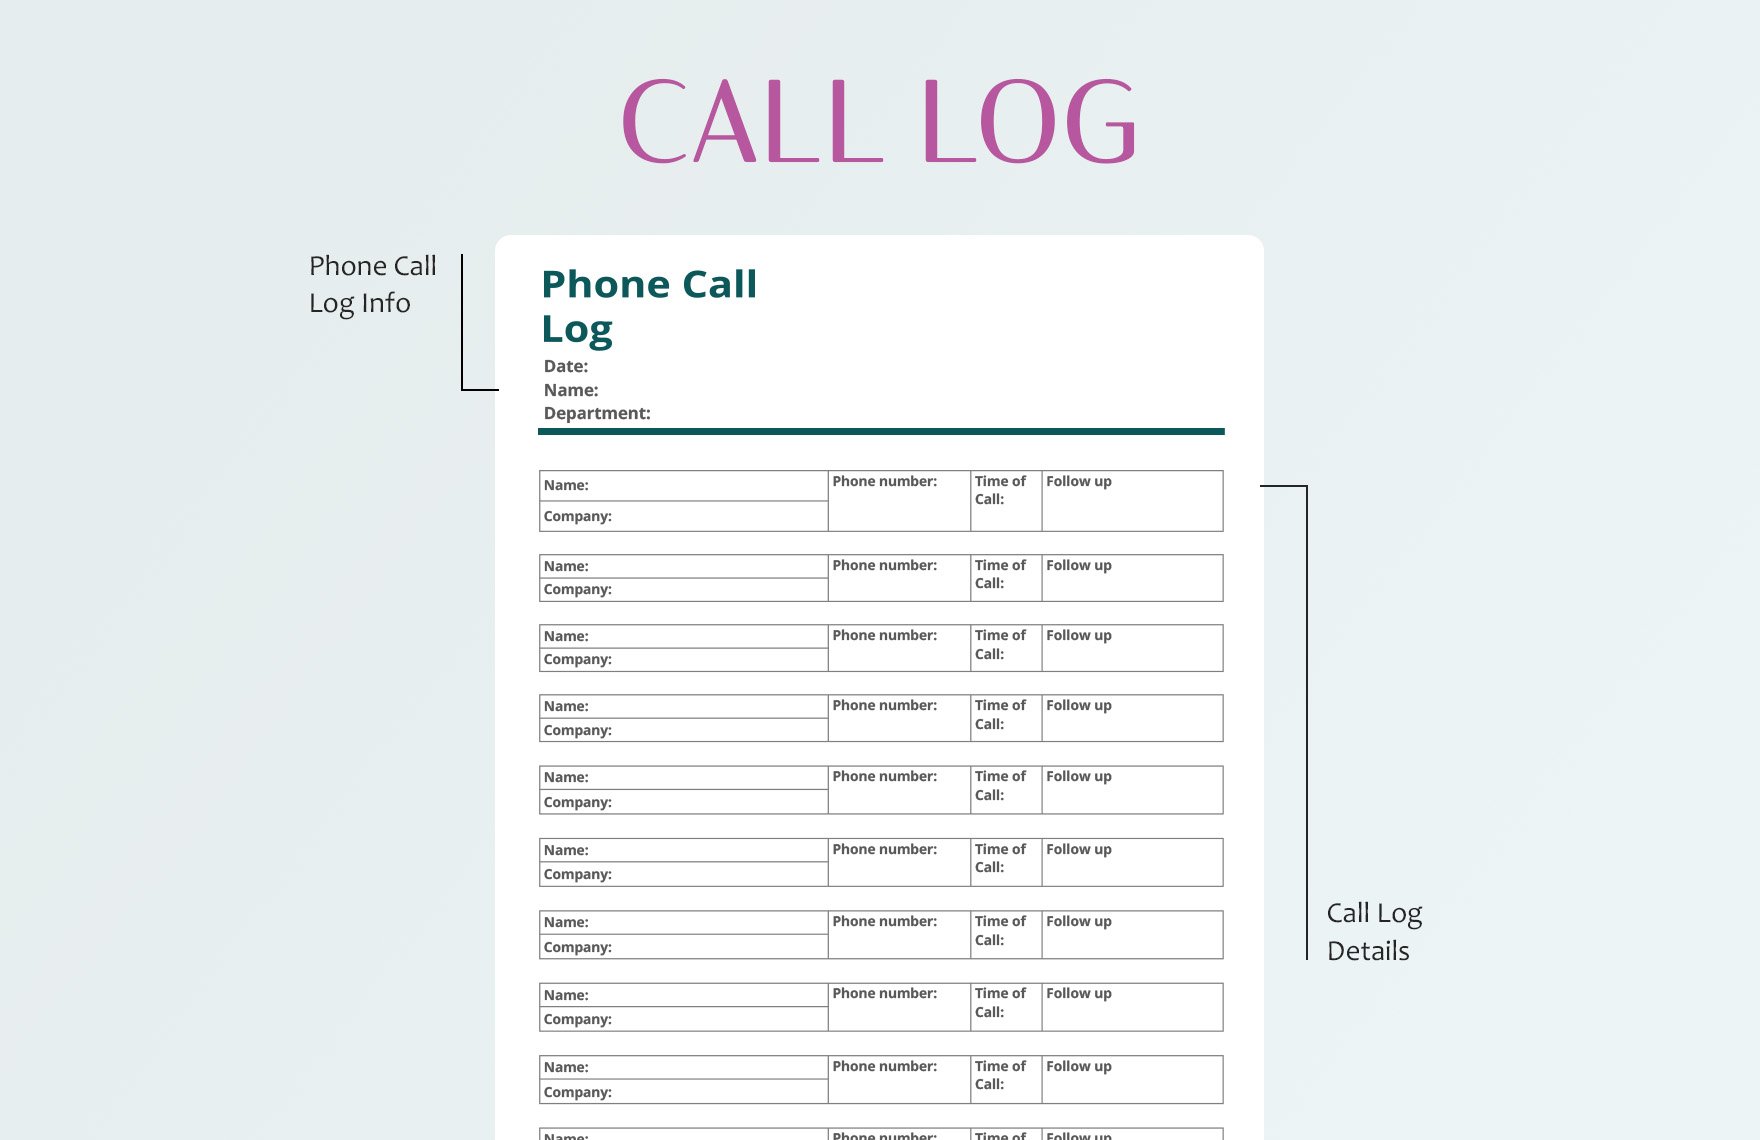 Phone Call Log Template